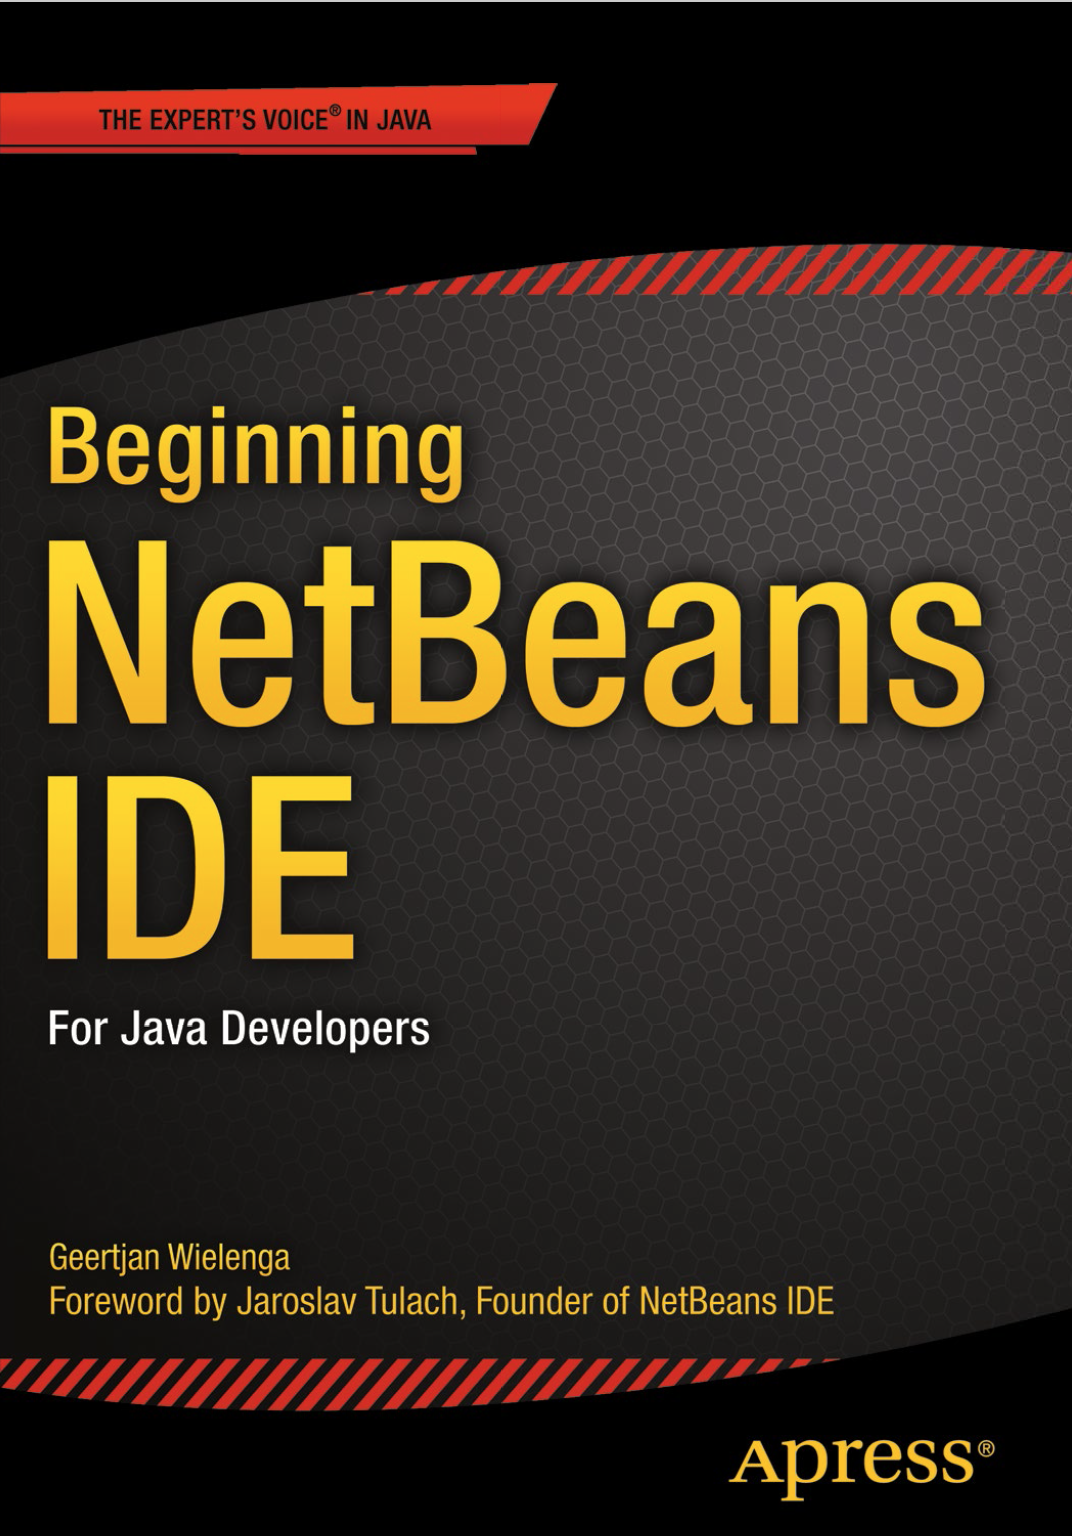 Beginning NetBeans IDE for Java Developers